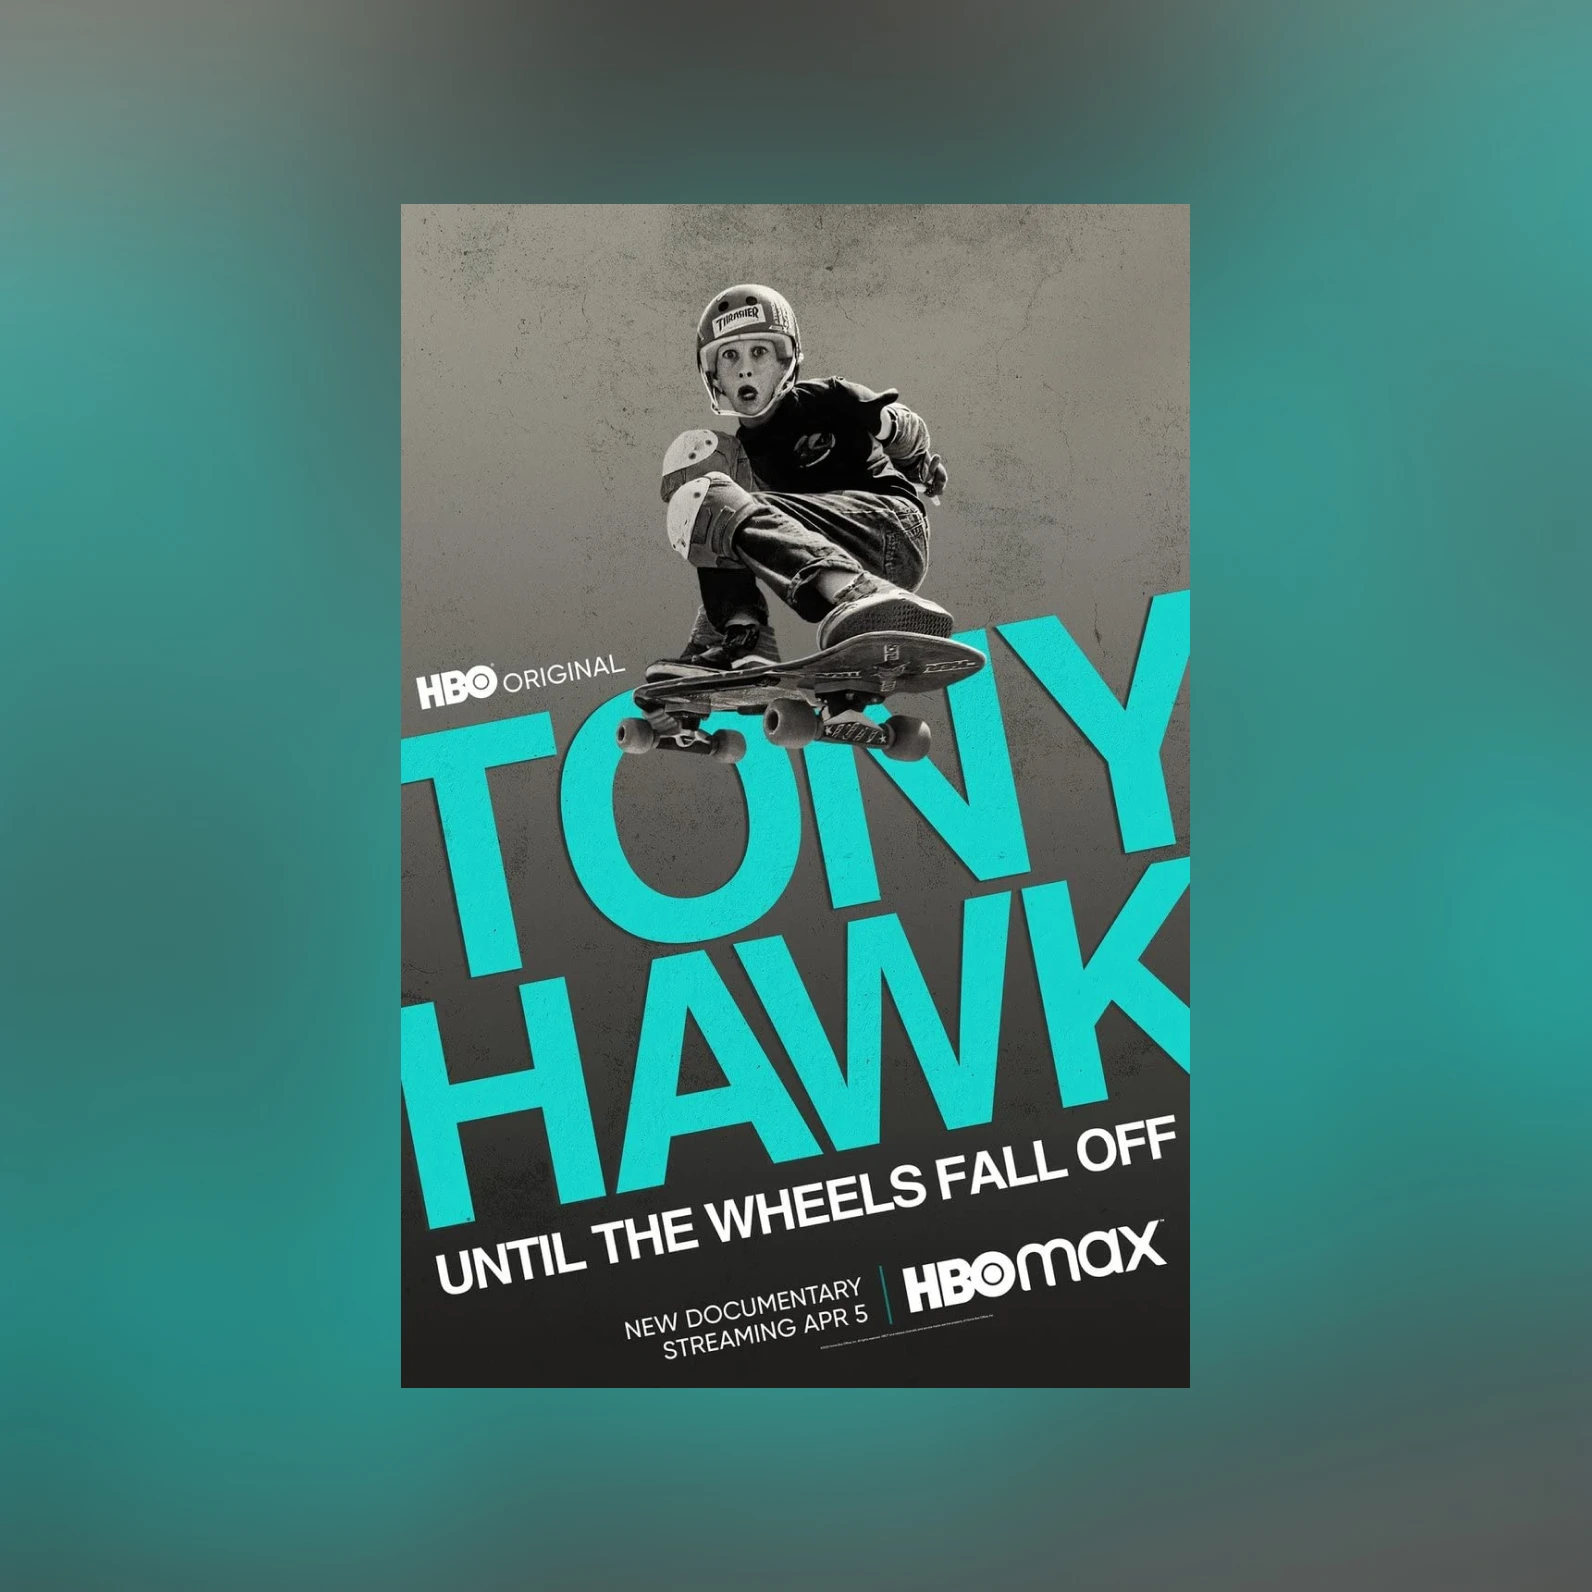 Tony Hawk: Until the Wheels Fall Off, Documentary